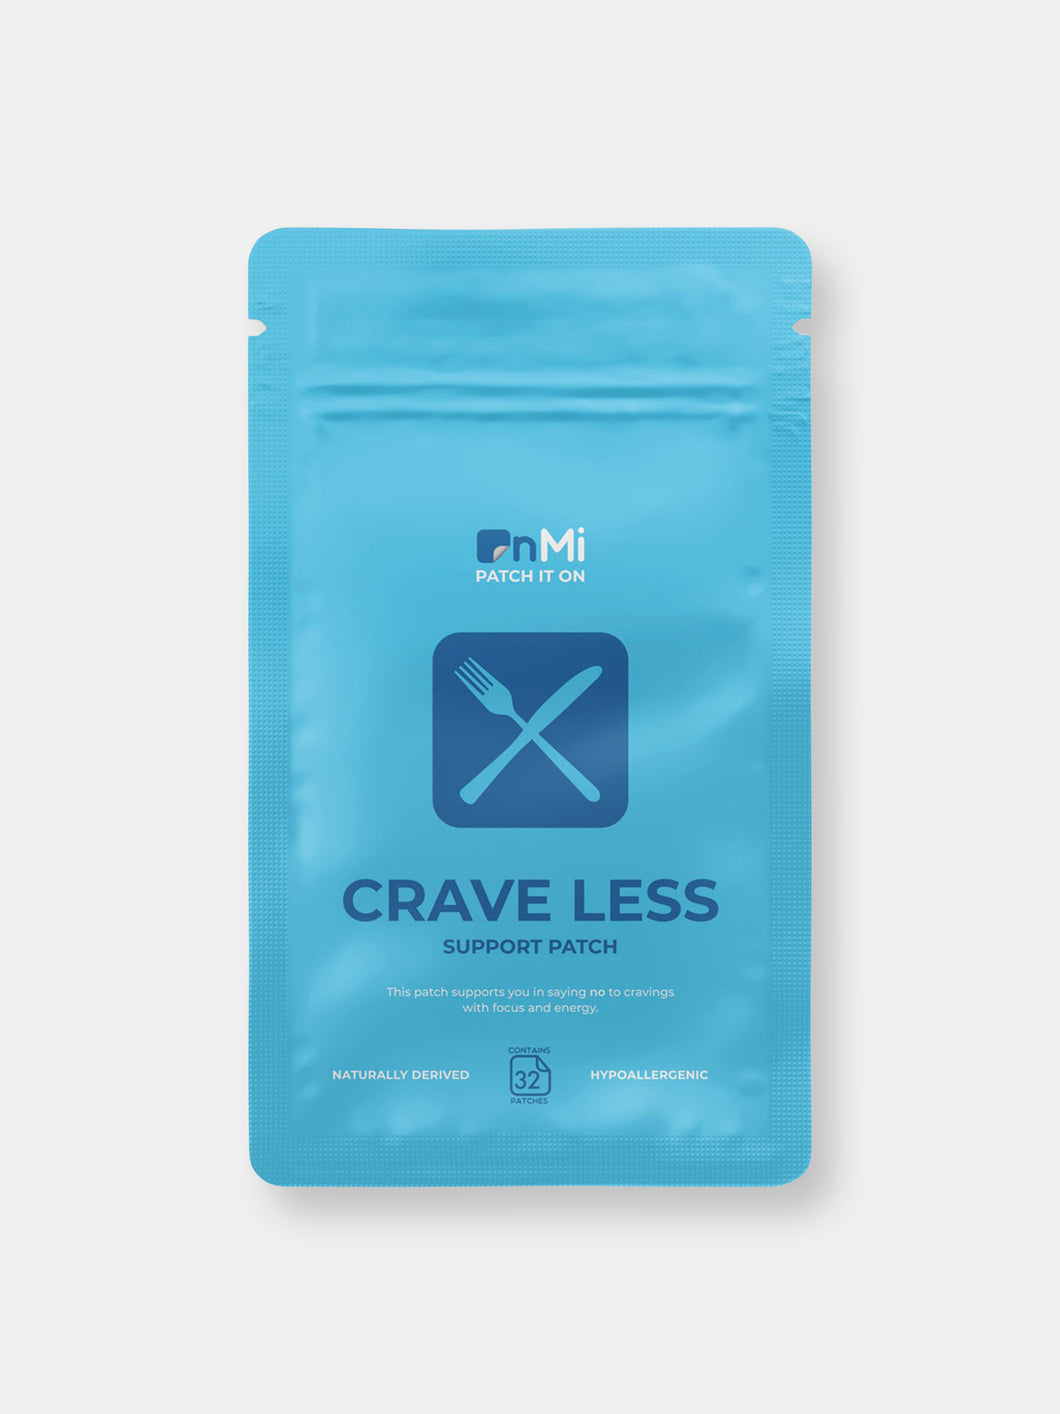 Crave Less